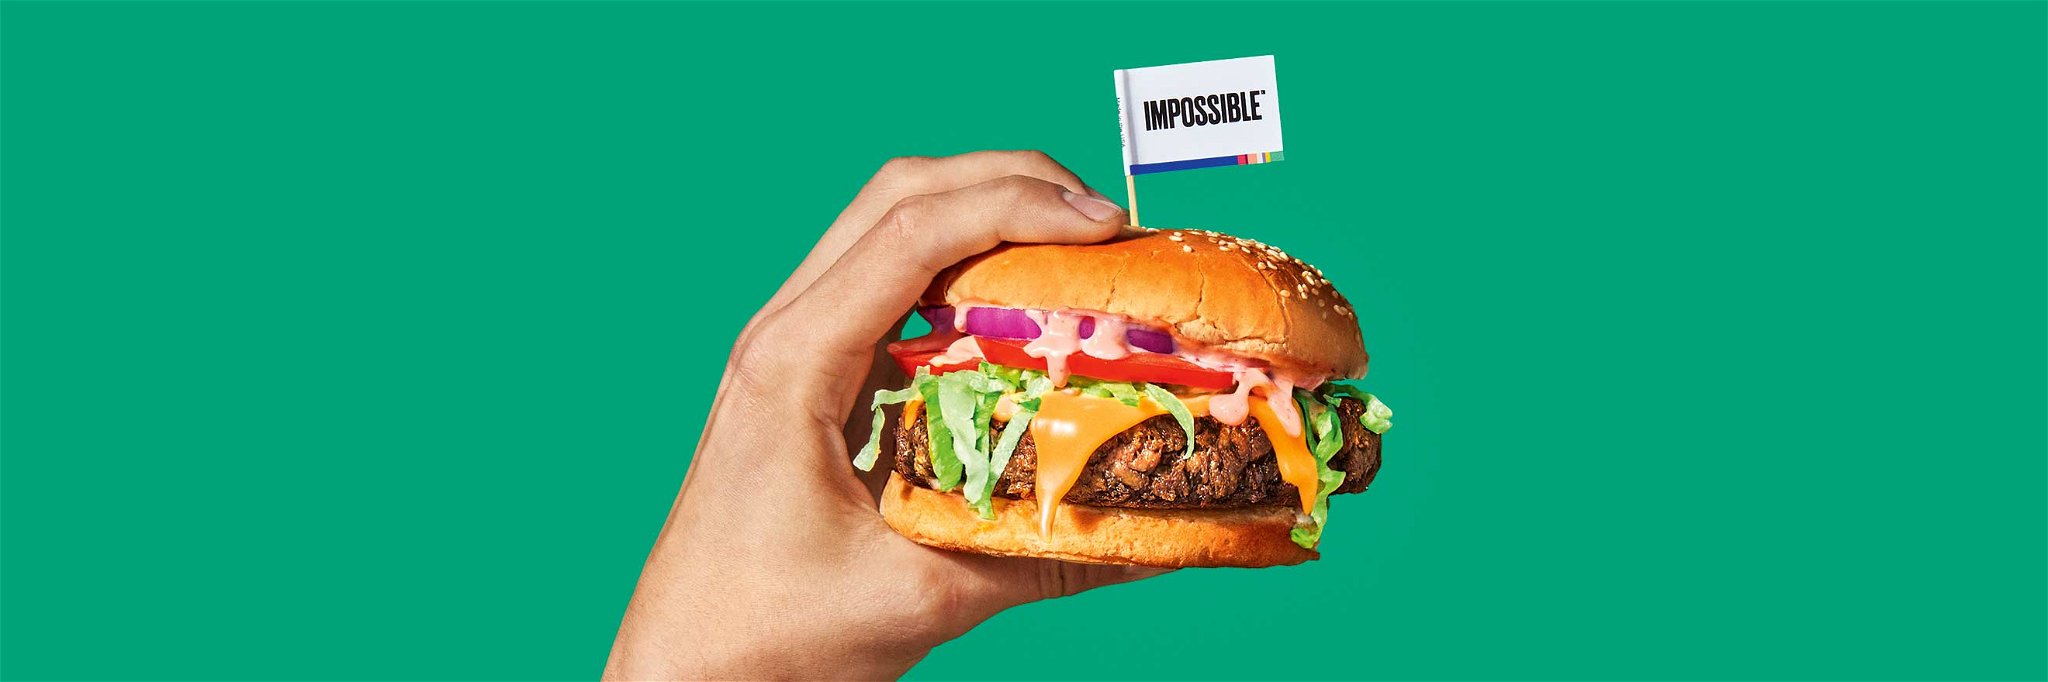 Der »Impossible Burger« aus Kalifornien möchte tierische Produkte gezielt durch pflanzenbasiertes »Kunstfleisch« ersetzen.&nbsp;